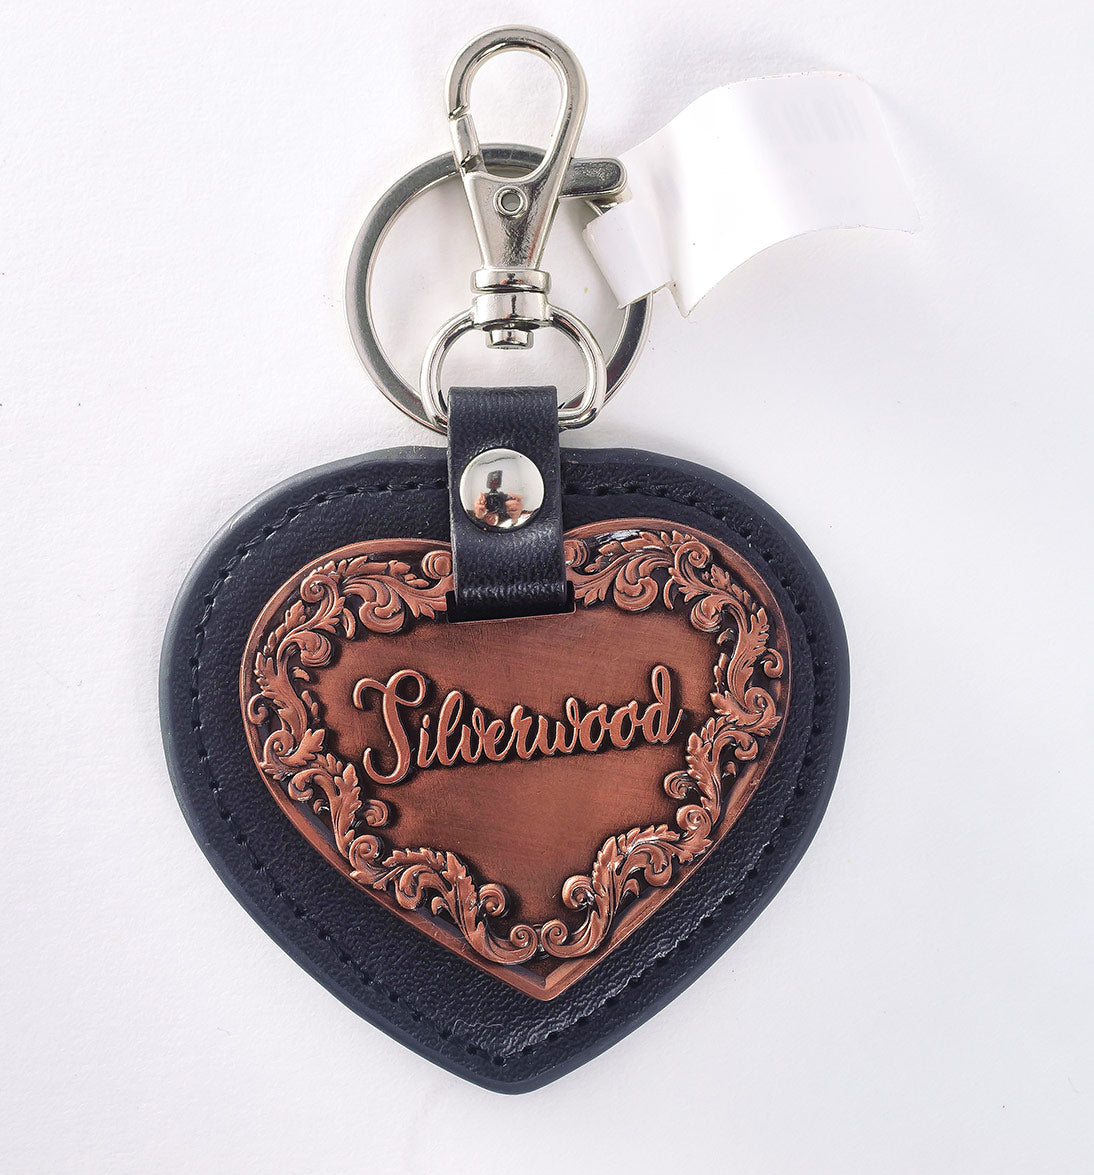 Silverwood Copper Heart Keychain